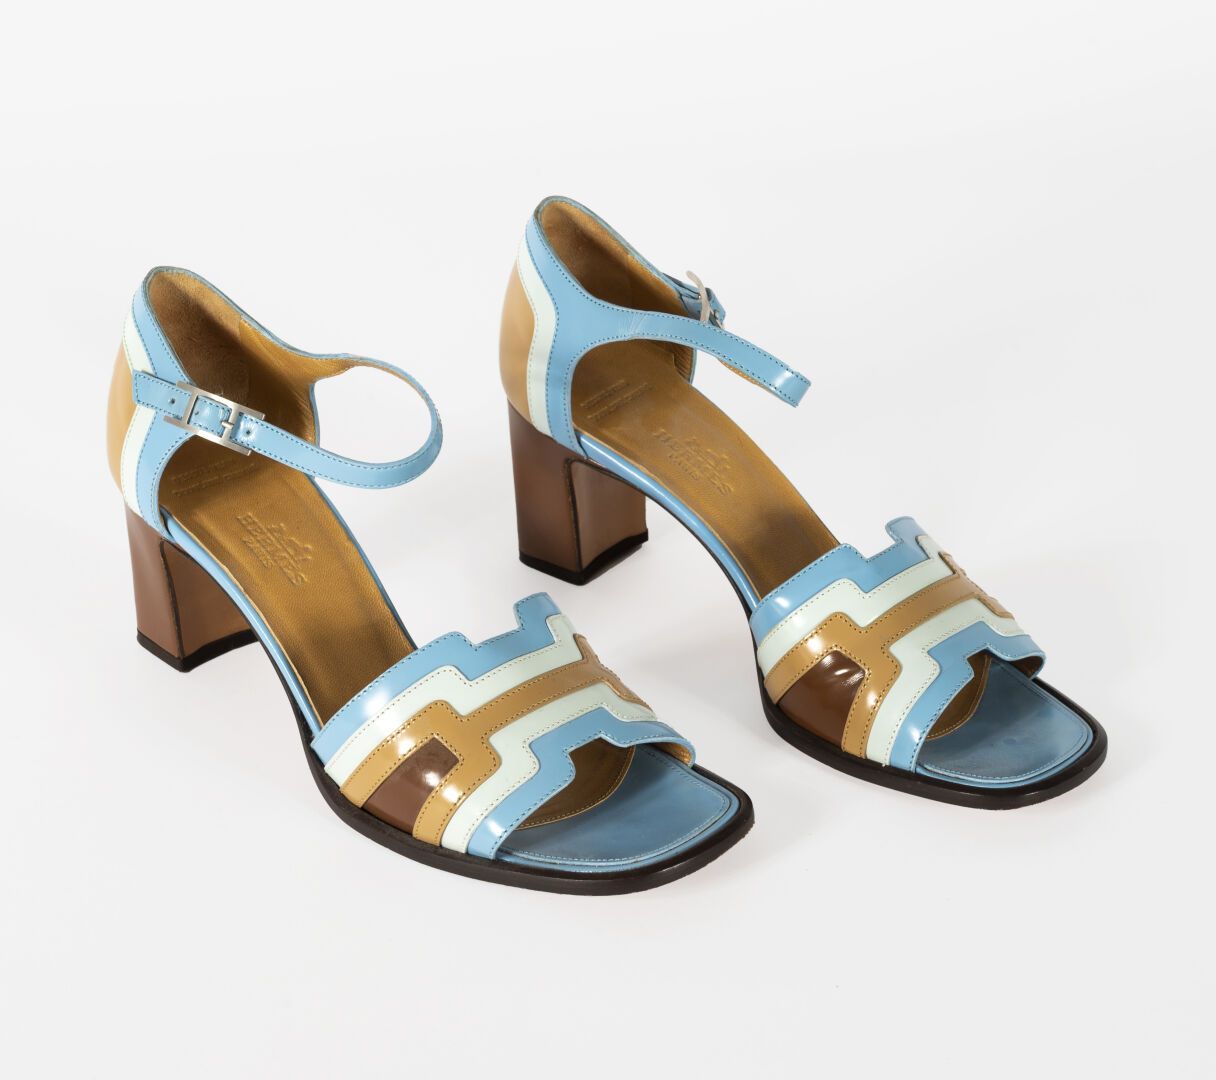 HERMES Hermès-Paire de sandales en cuir verni bleu et beige

Taille 37,5